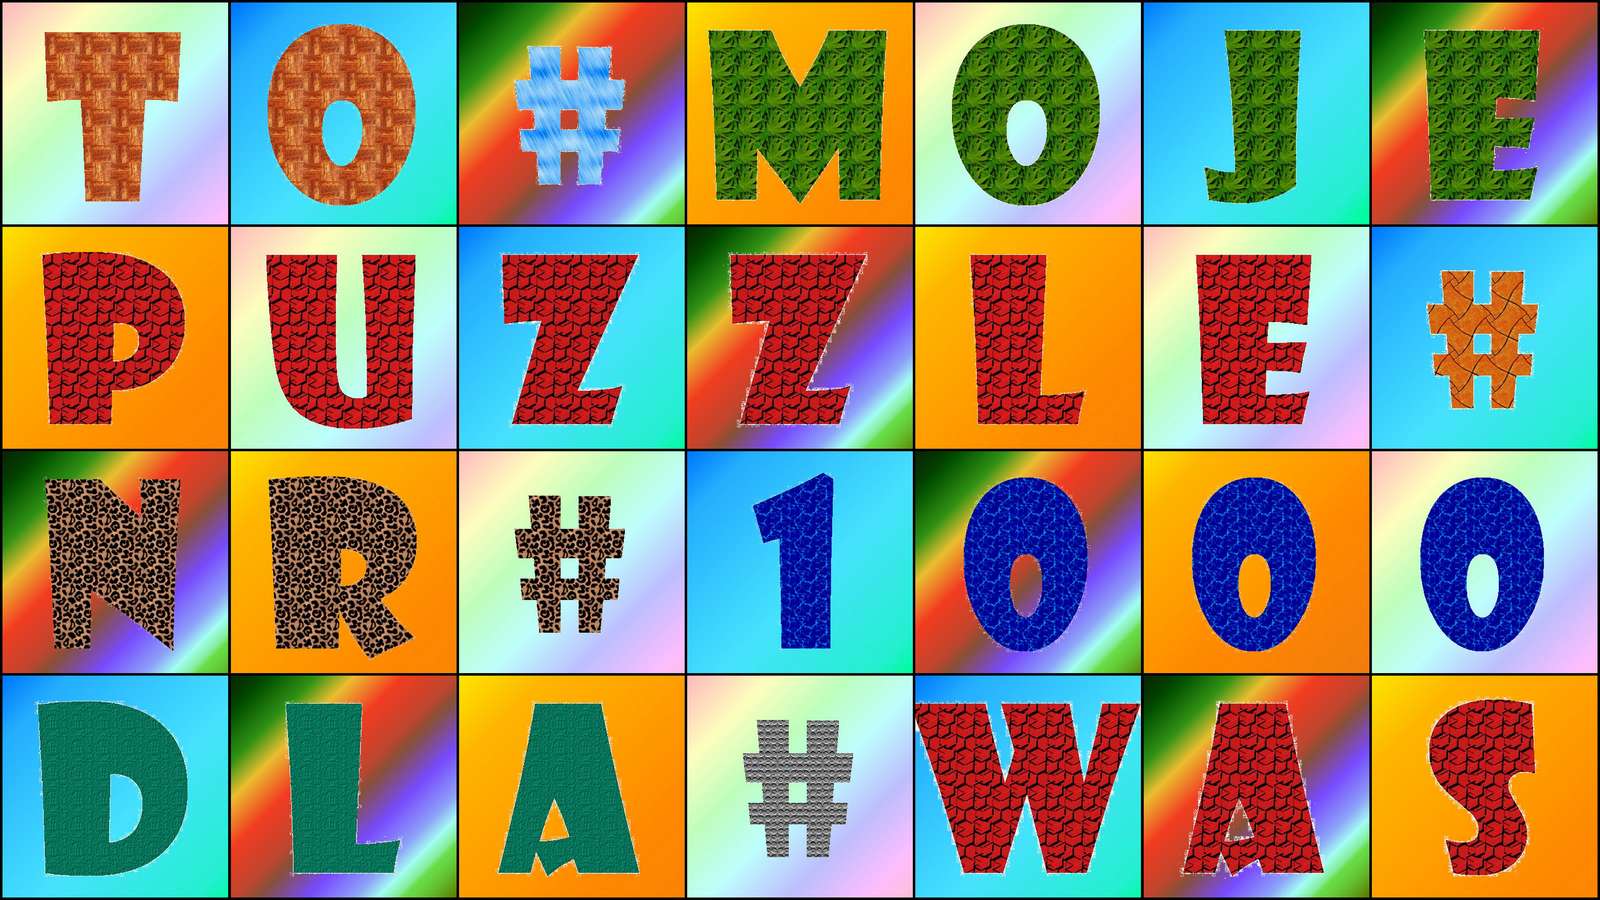 1000-es számú rejtvény puzzle online fotóról